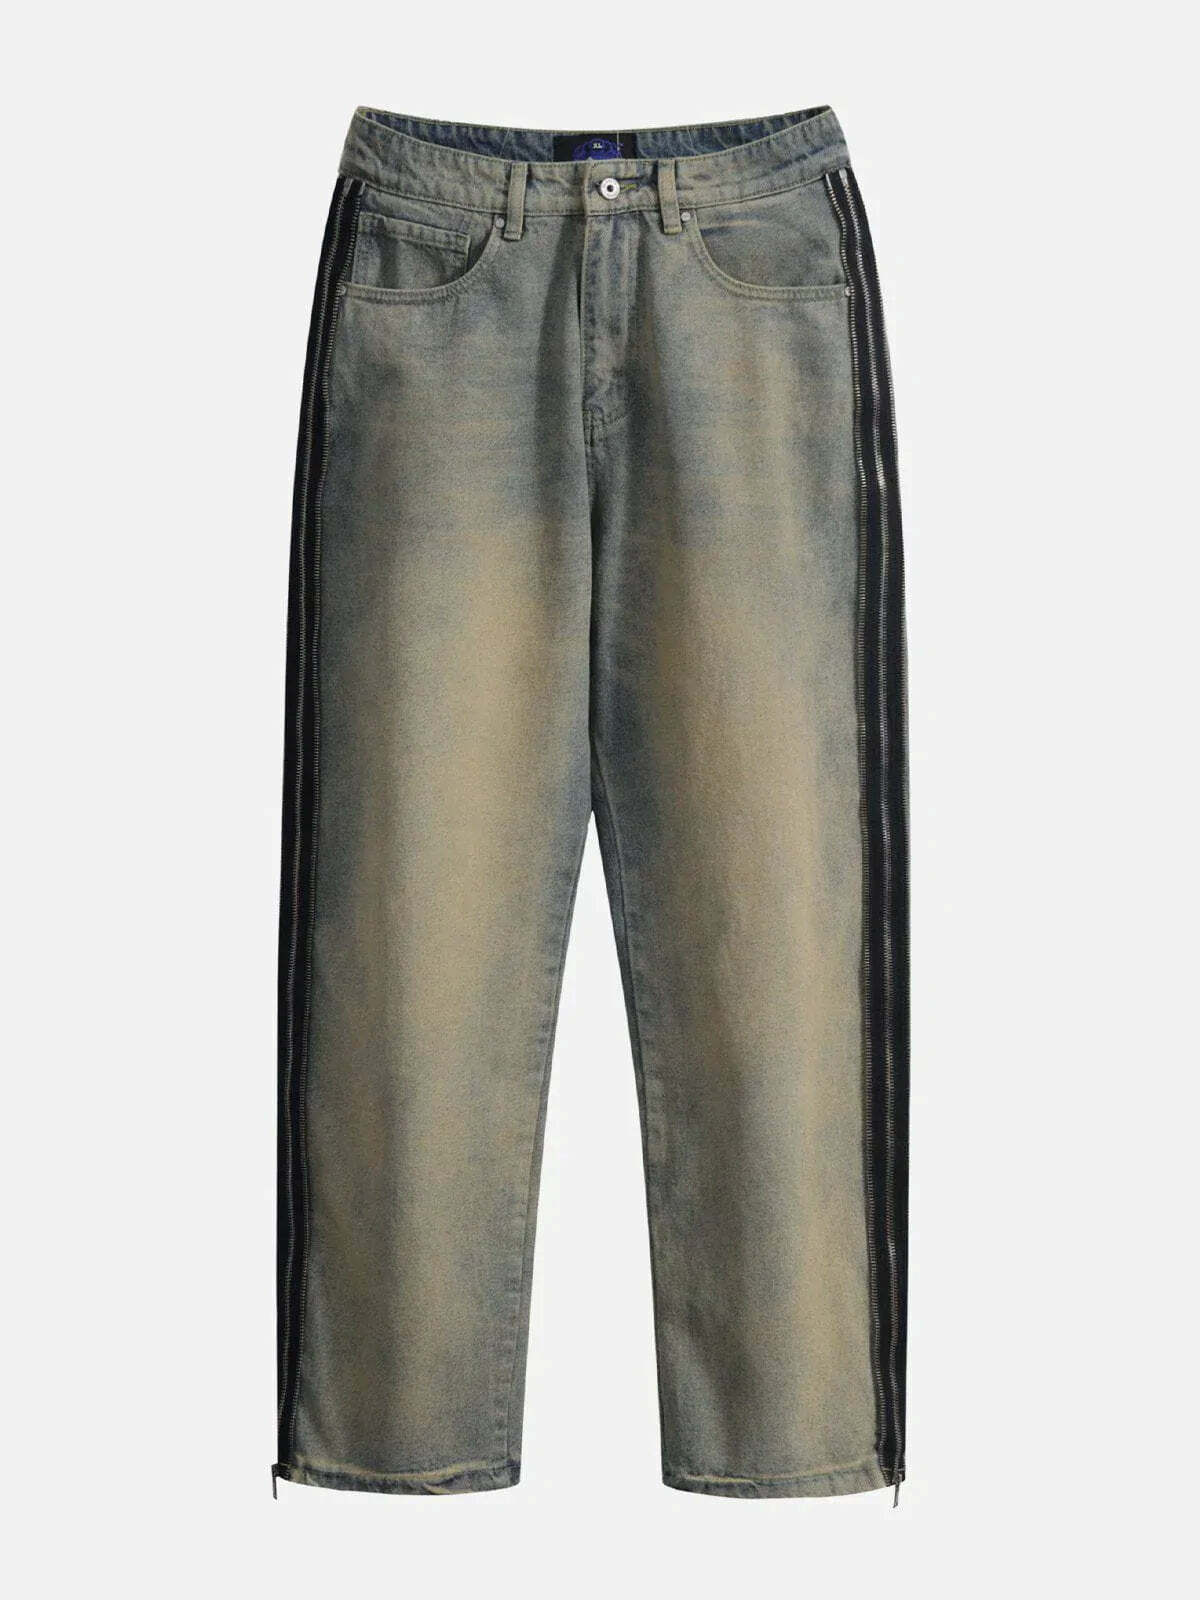 vintage zipup denim pants edgy y2k streetwear icon 4056